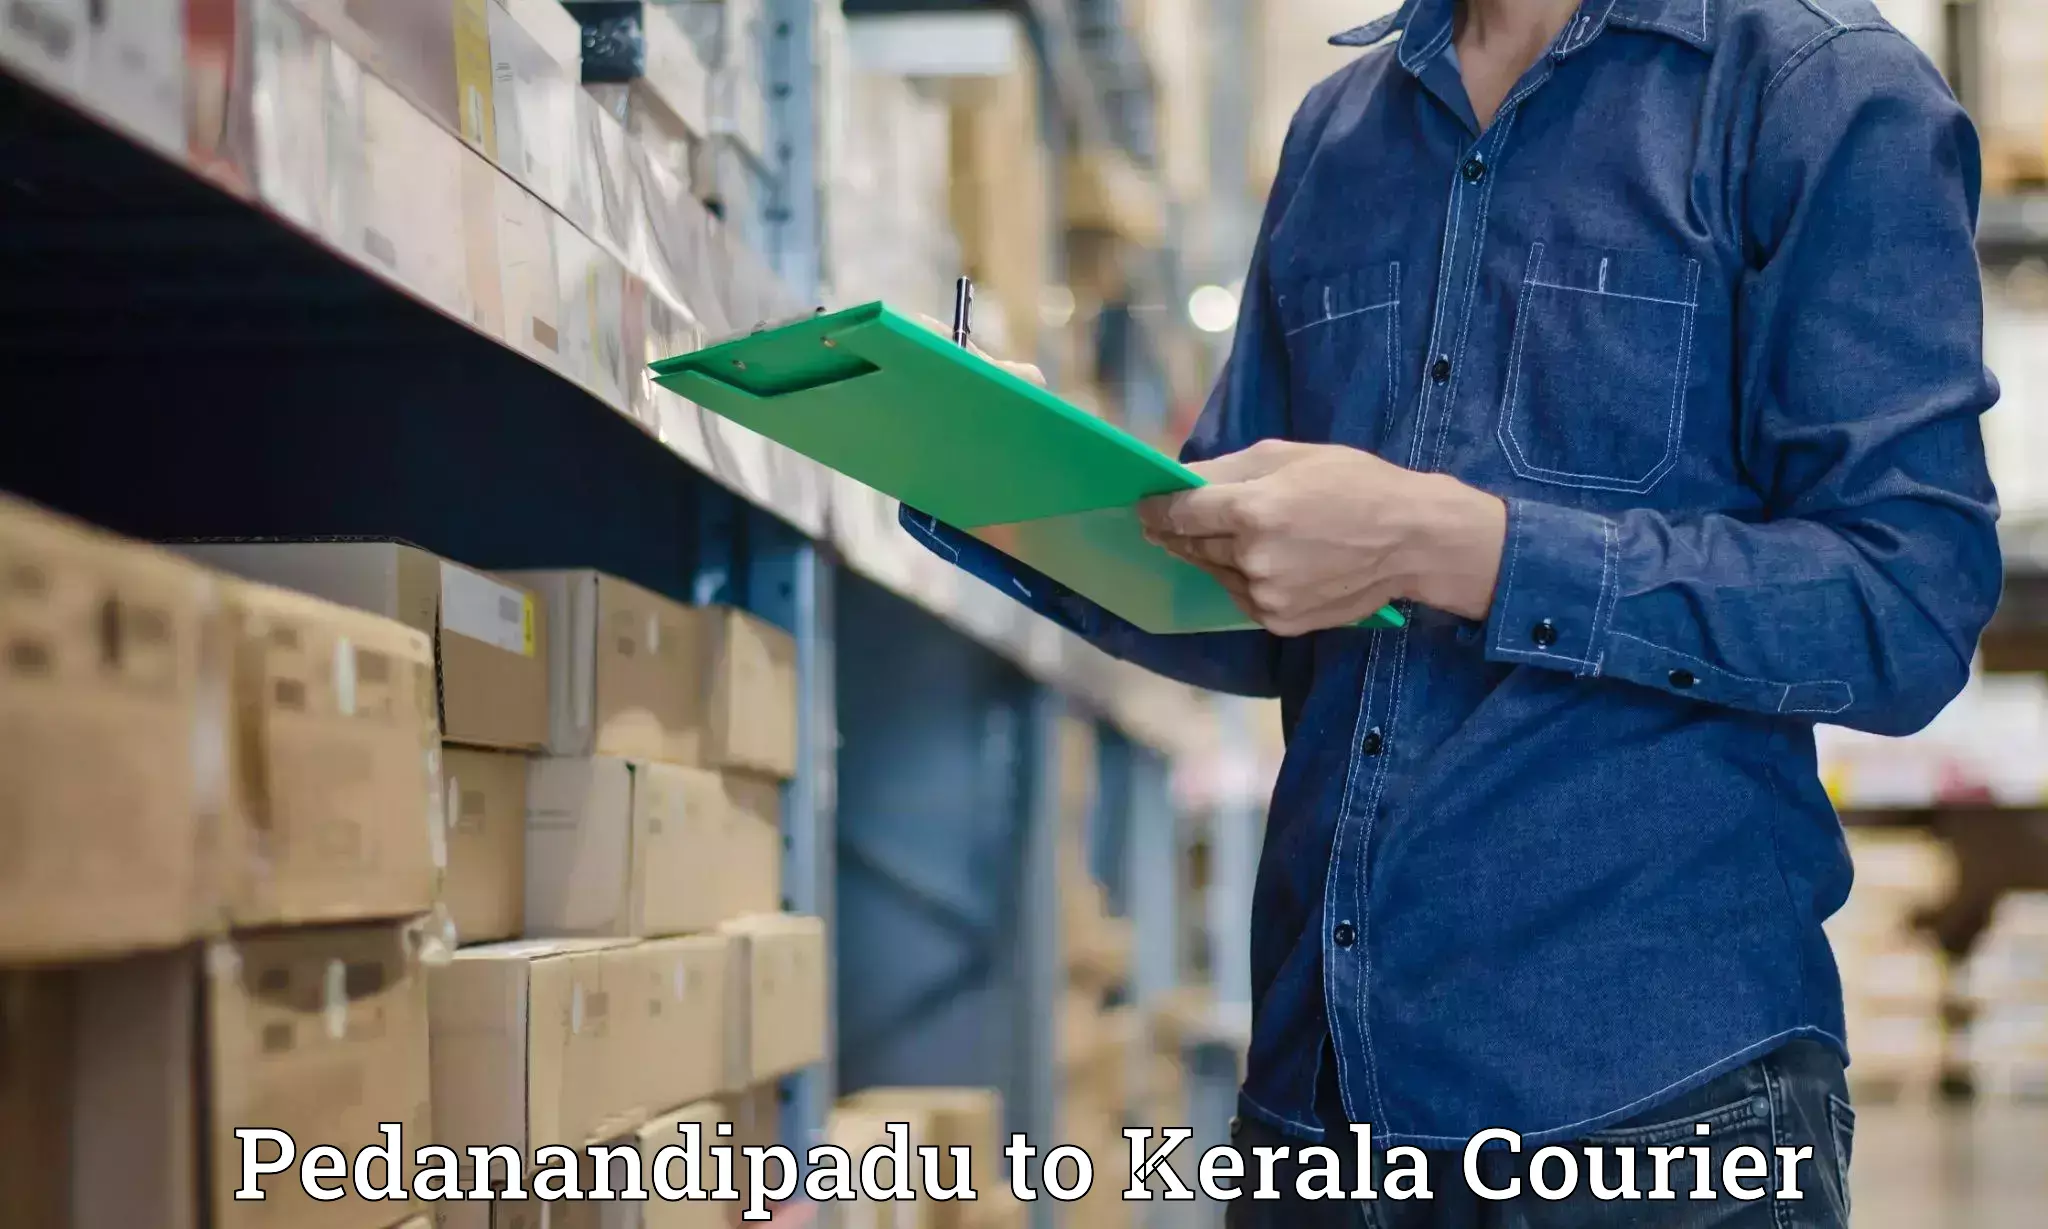 State-of-the-art courier technology Pedanandipadu to Kakkayam